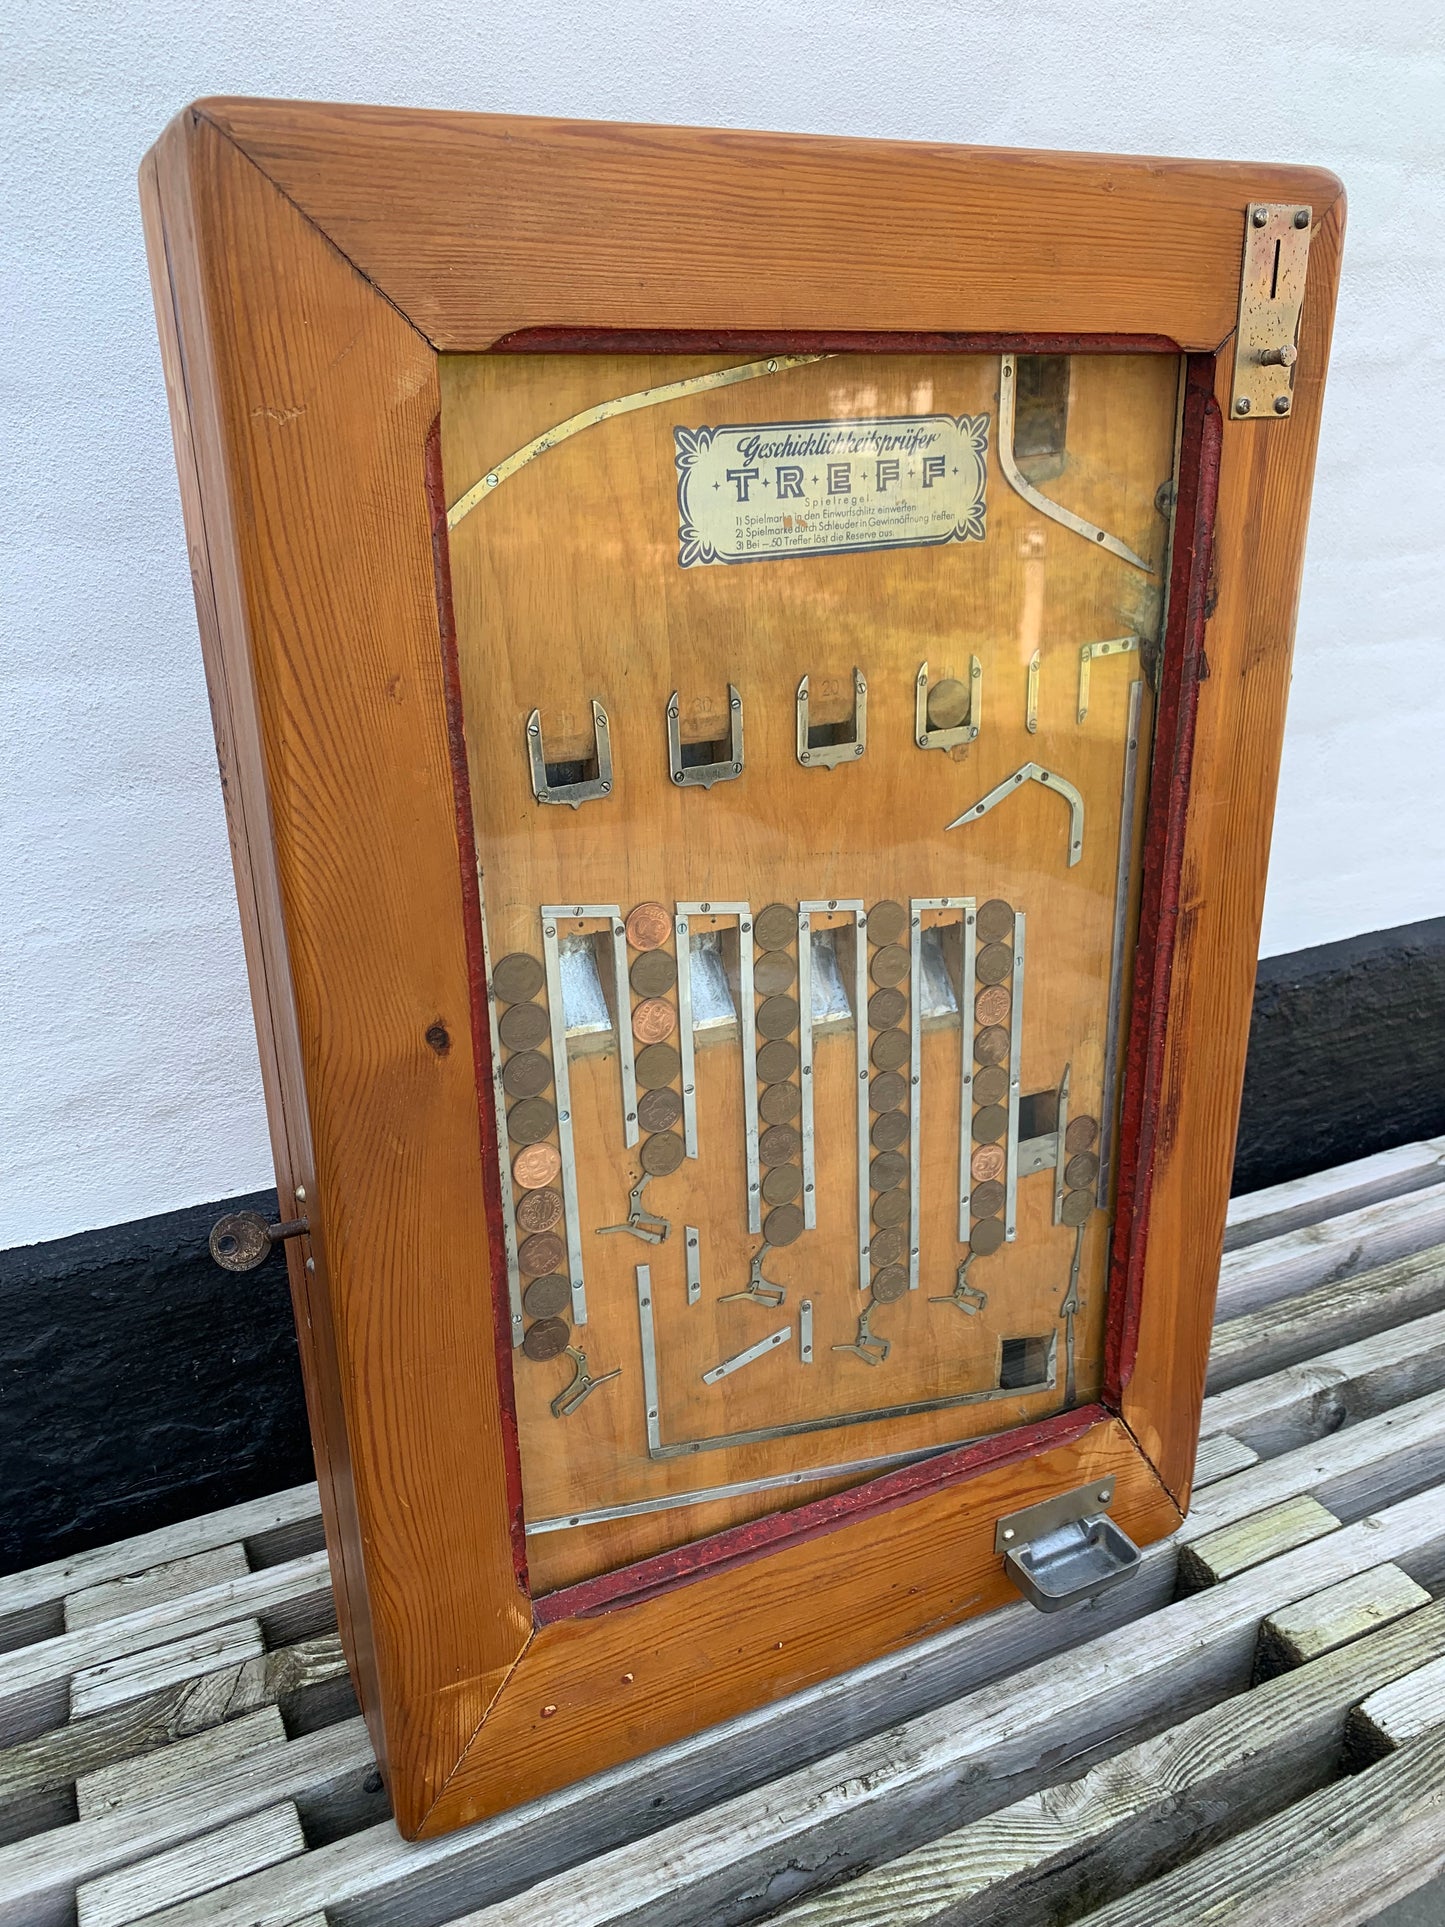 Gammel spilleautomat